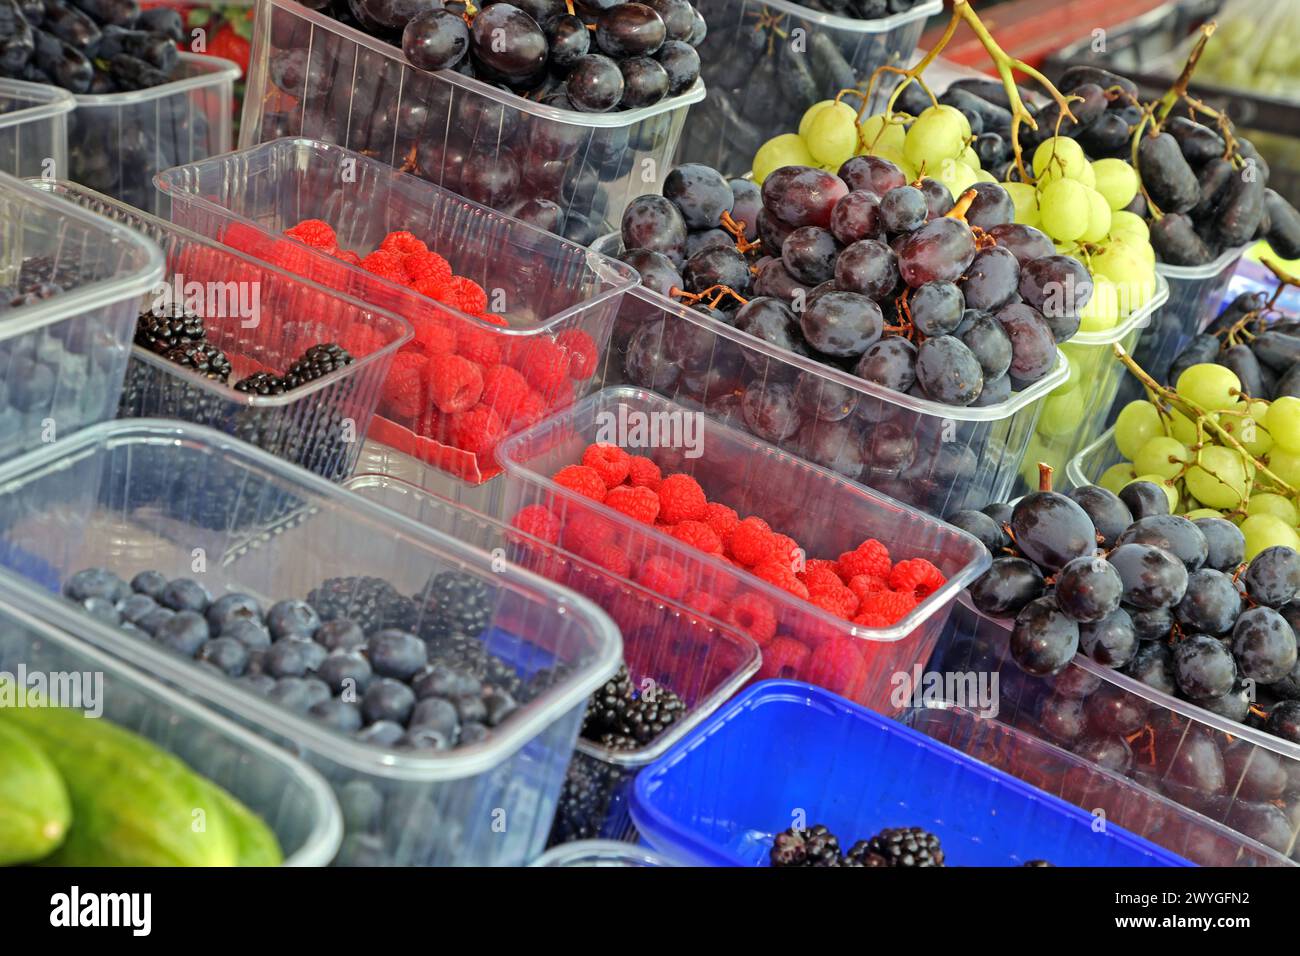 Obst als gesundes Nahrungsmittel viele verschiedene Obstsorten liegen an einem Obststand zum Verkauf bereit *** Obst als gesundes Lebensmittel stehen an einem Obststand viele verschiedene Obstsorten zum Verkauf zur Verfügung Stockfoto